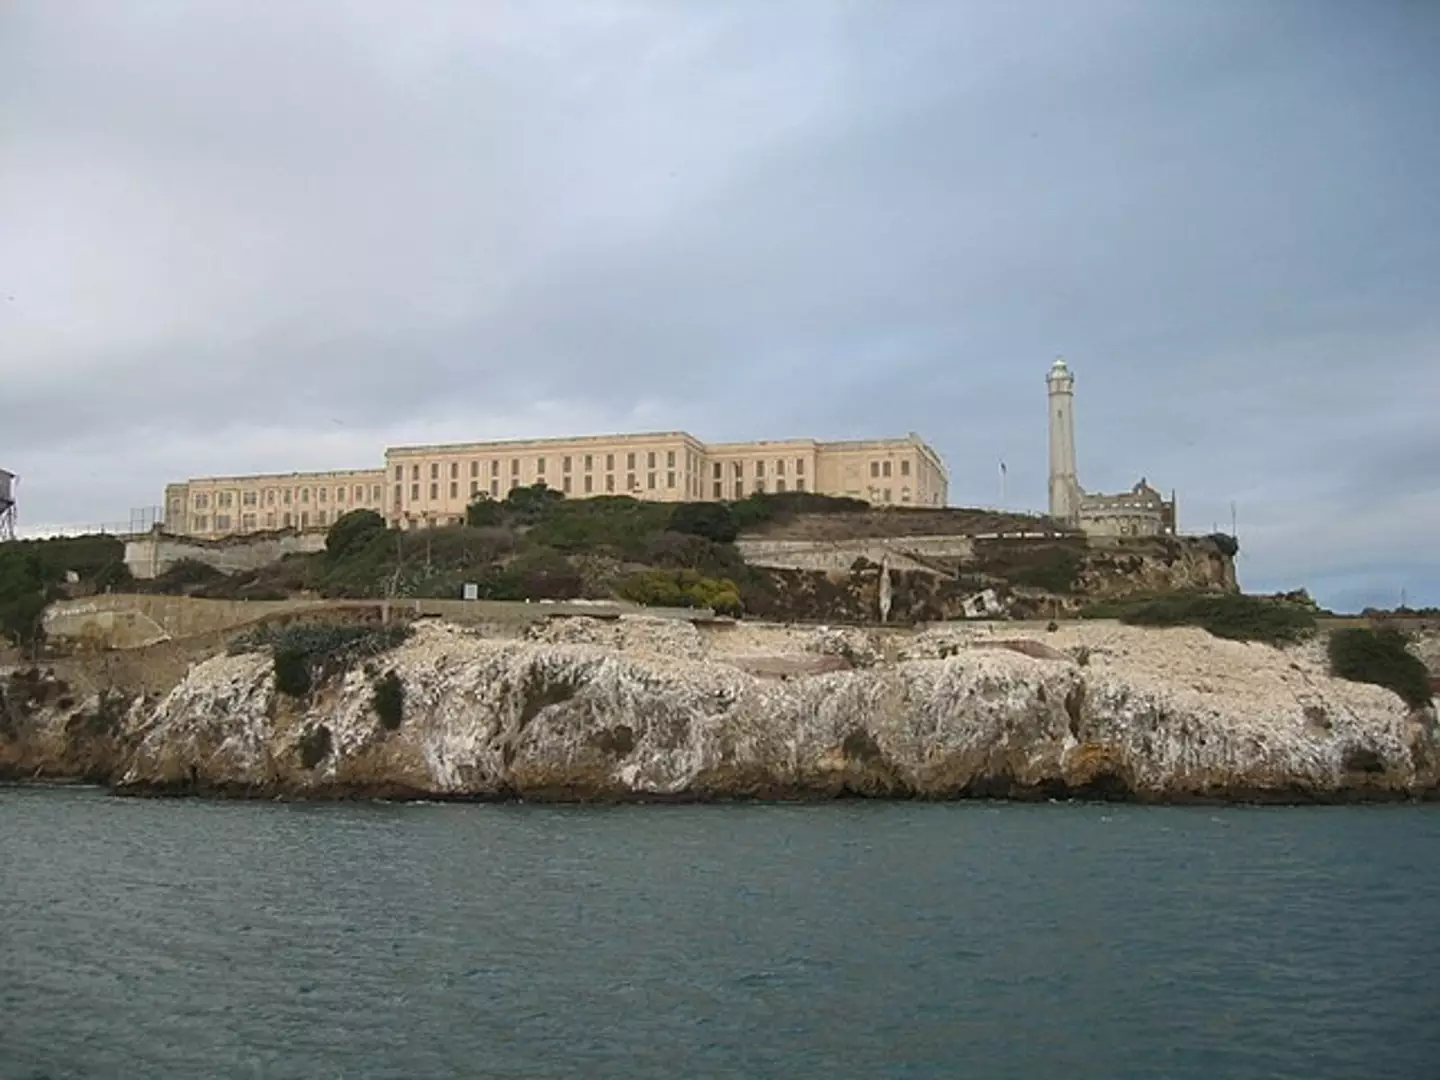 Alcatraz was closed down as a prison in 1963.